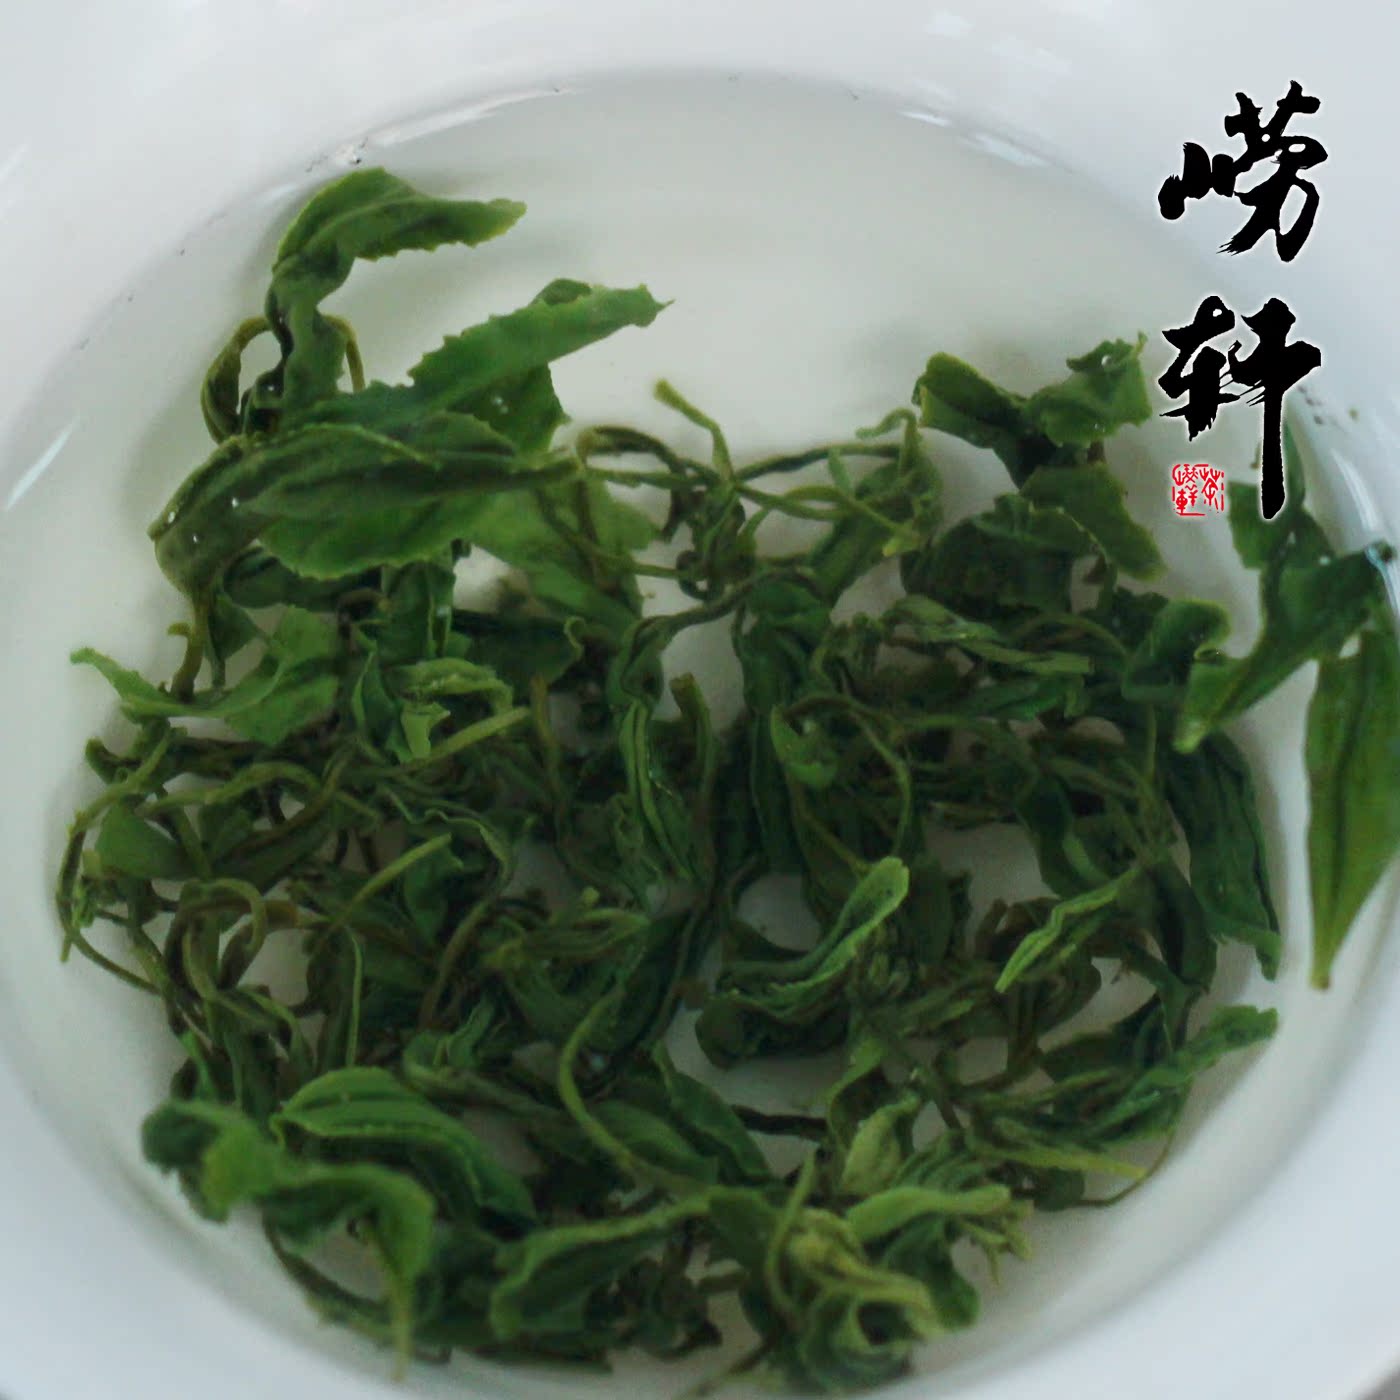 崂轩手工茶 2016新春茶叶 特级崂山绿茶叶 明前茶  半斤230元